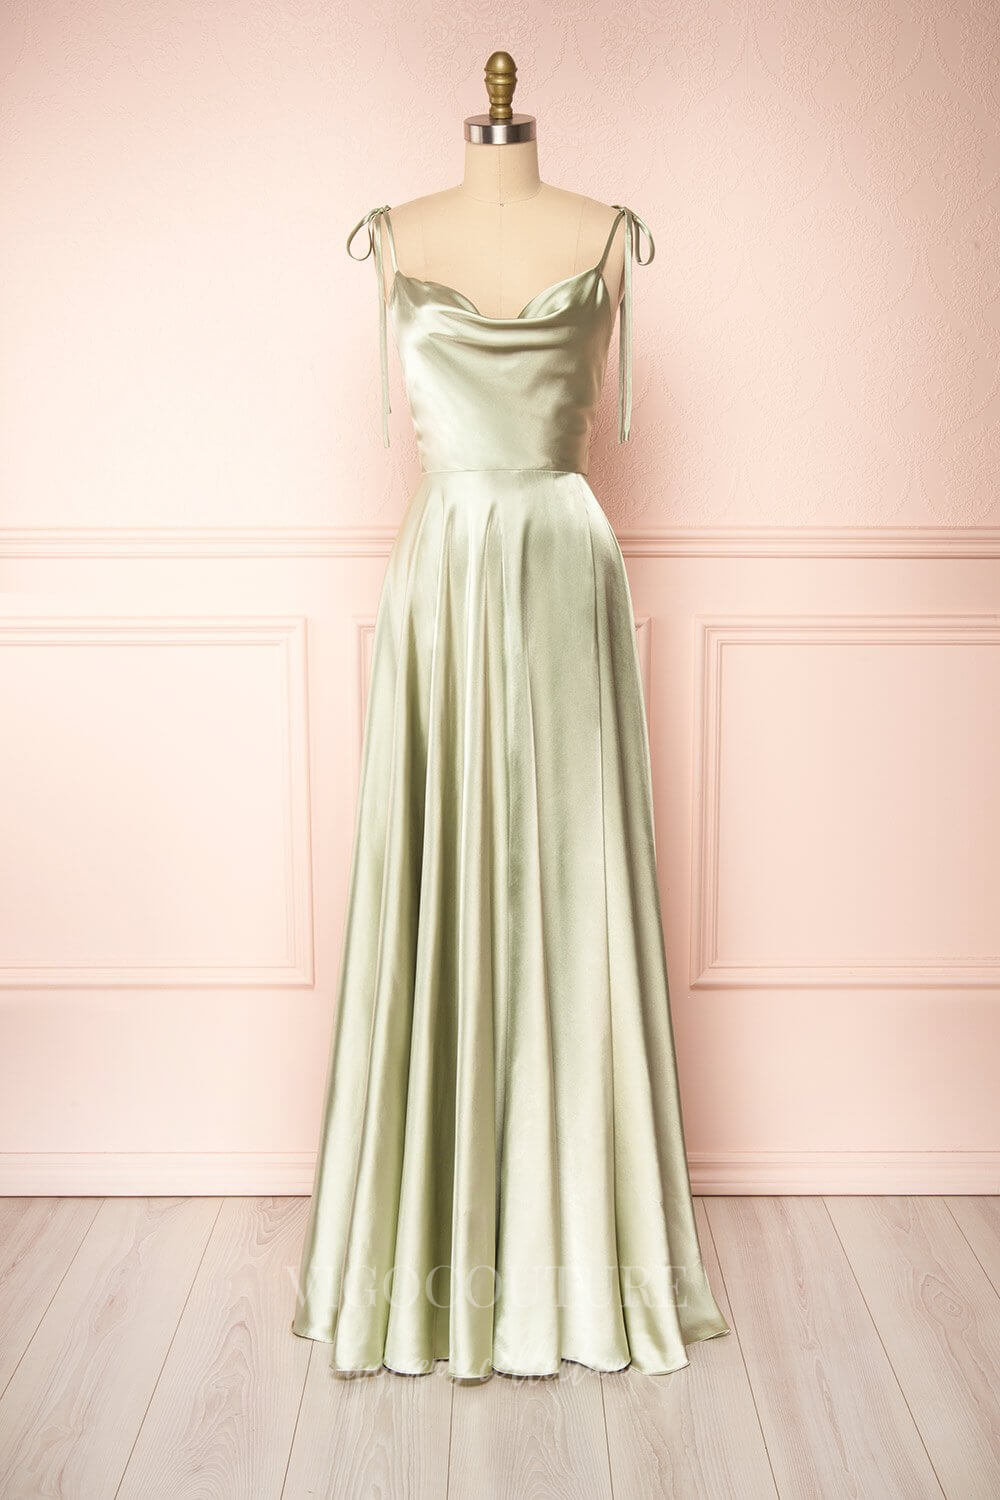 vigocouture-Satin Spaghetti Strap Prom Dress 20577-Prom Dresses-vigocouture-Sage-US2-